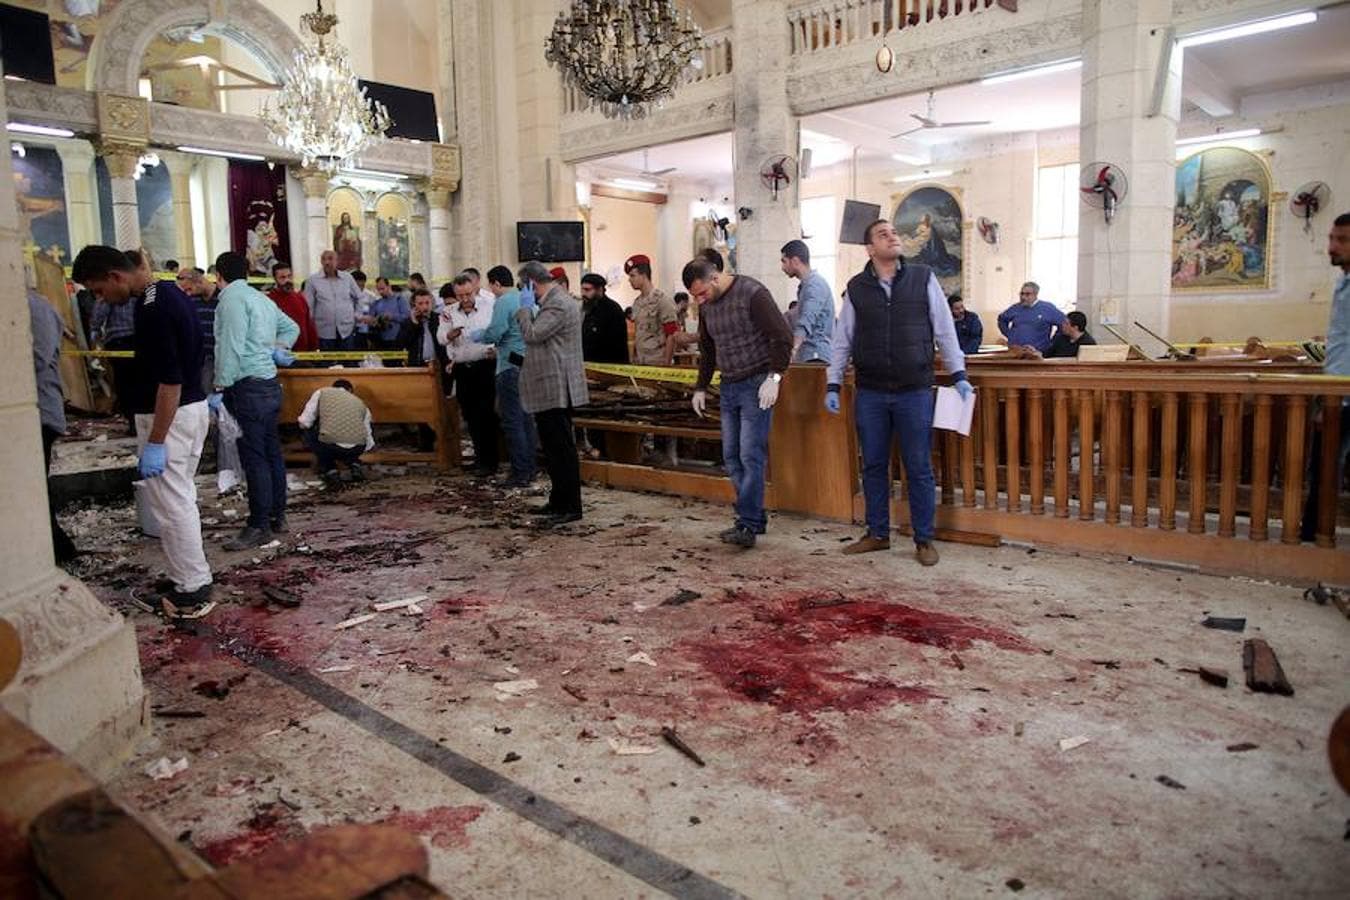 La celebración del Domingo de Ramos se ha tornado en tragedia tras una explosión en una iglesia copta en la localidad egipcia de Tanta, que se ha cobrado al menos 25 muertos